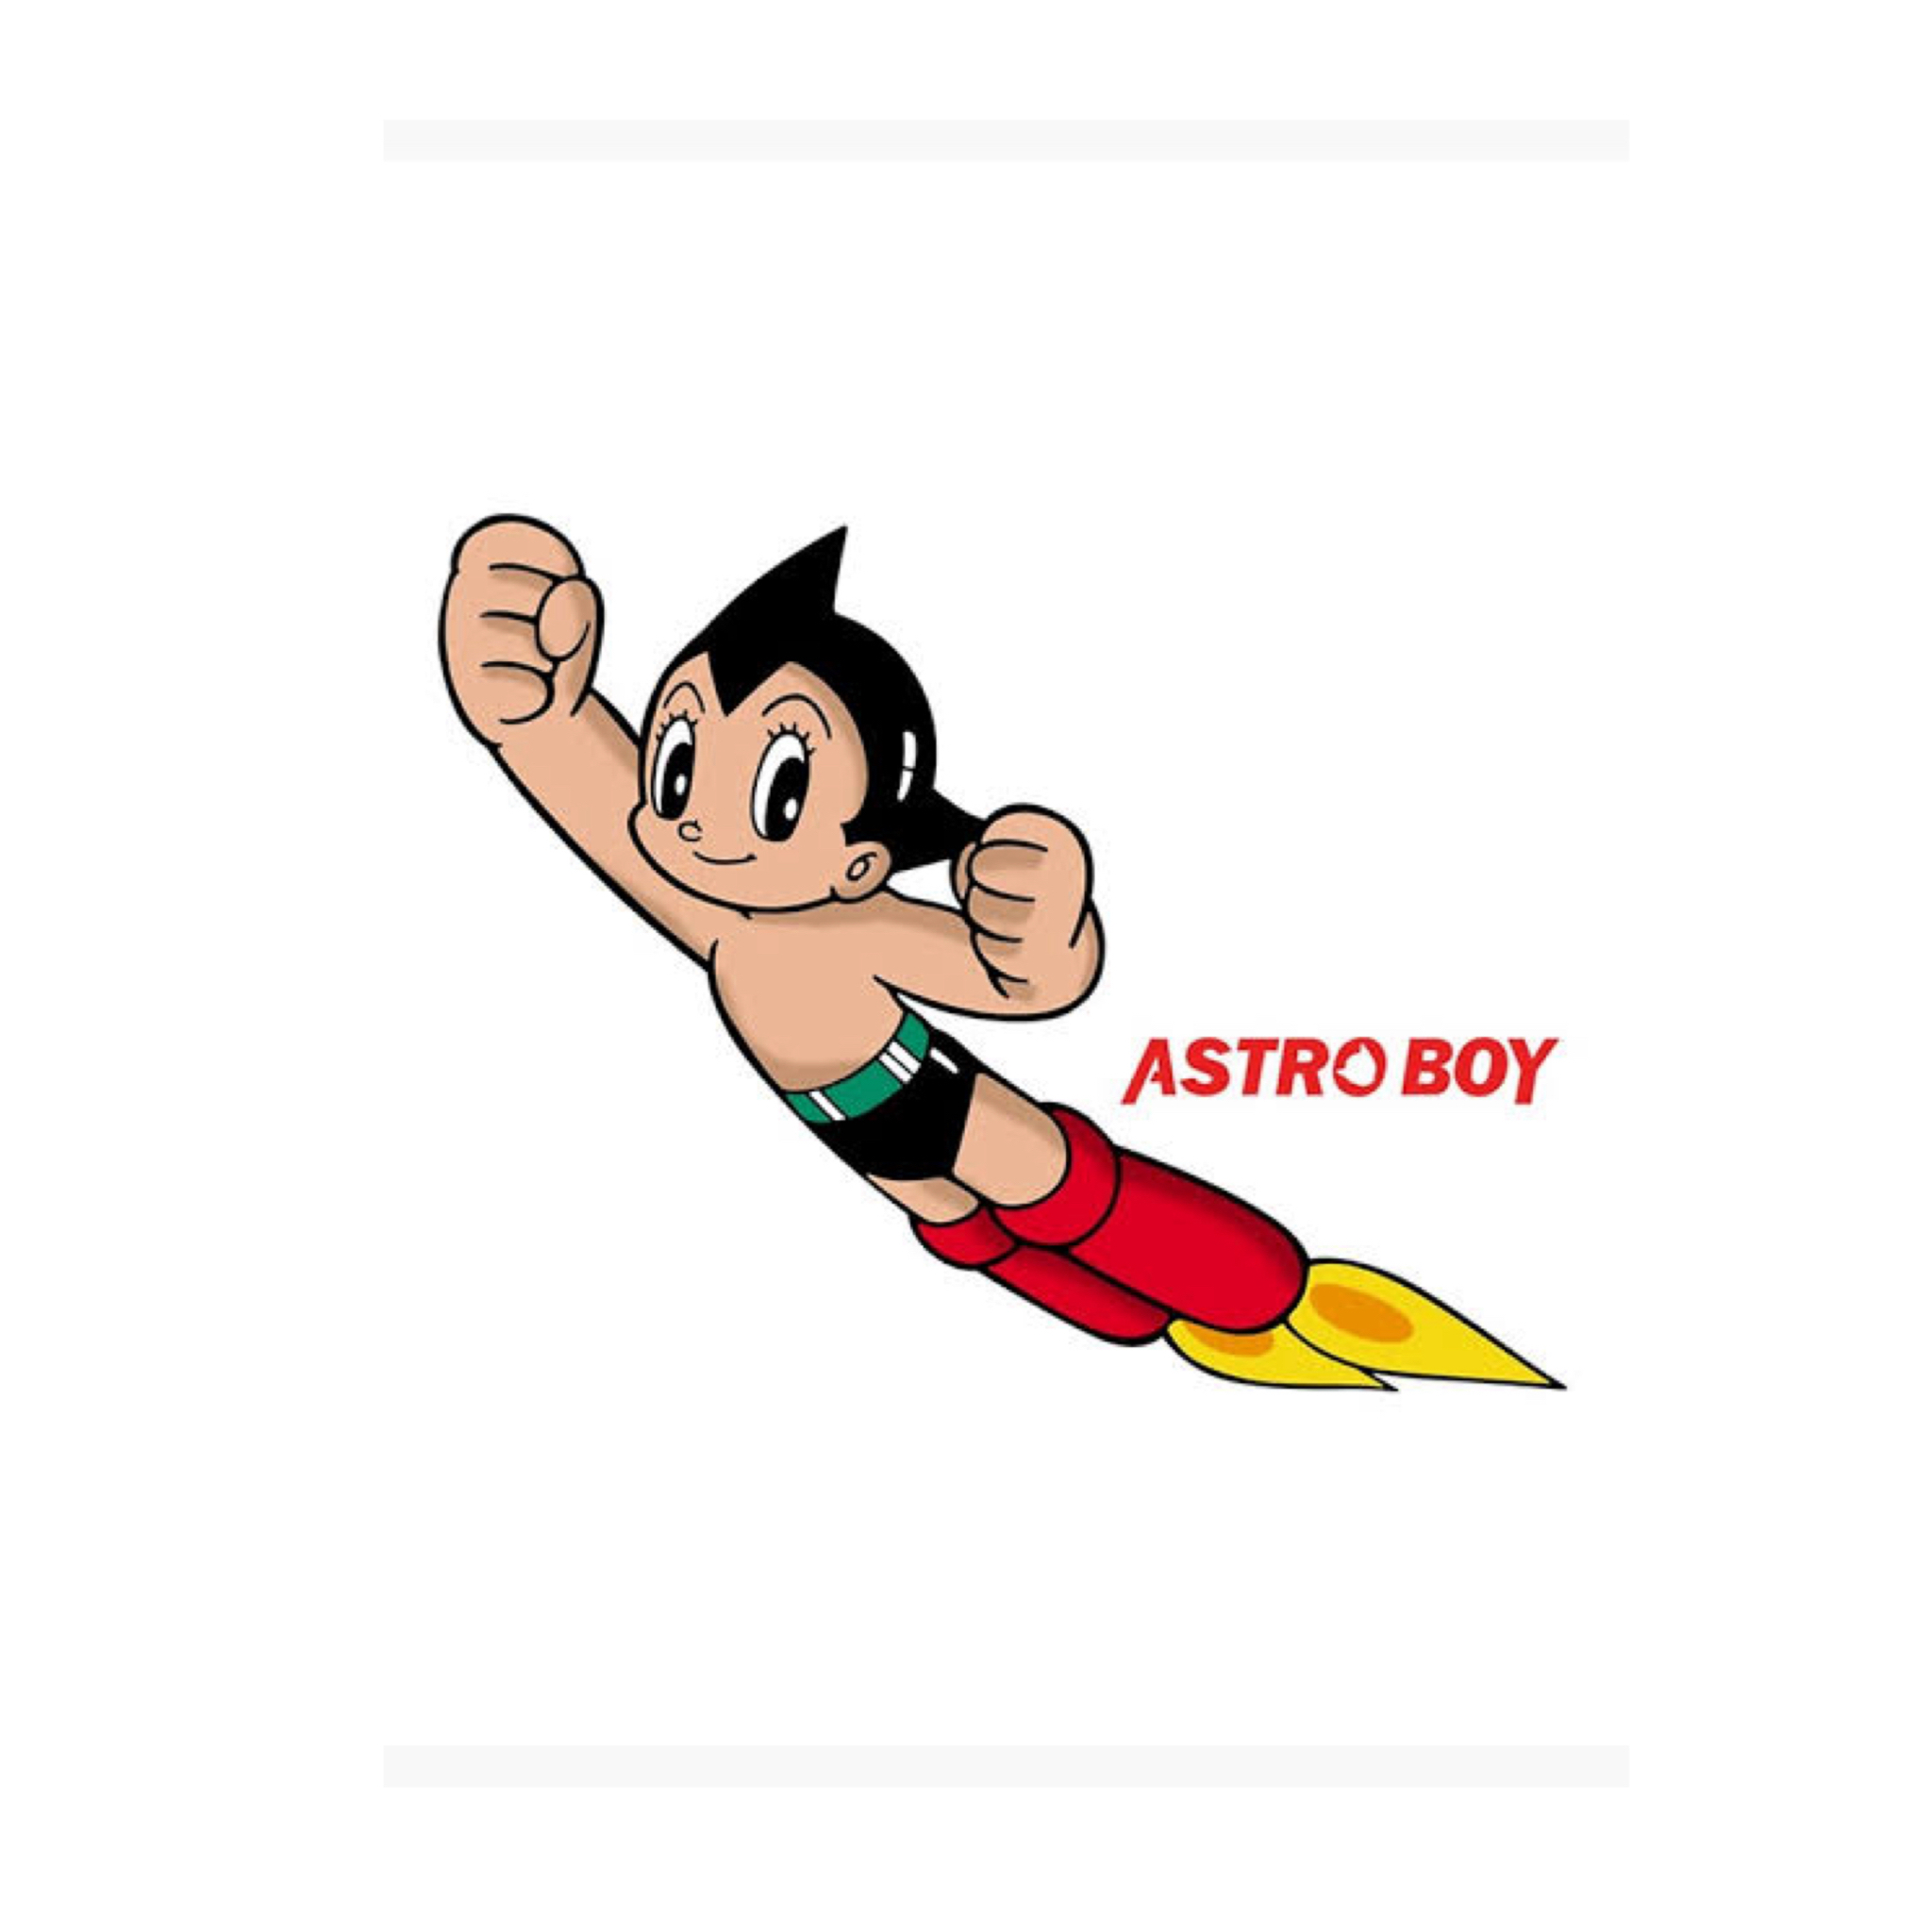 ASTRO BOY